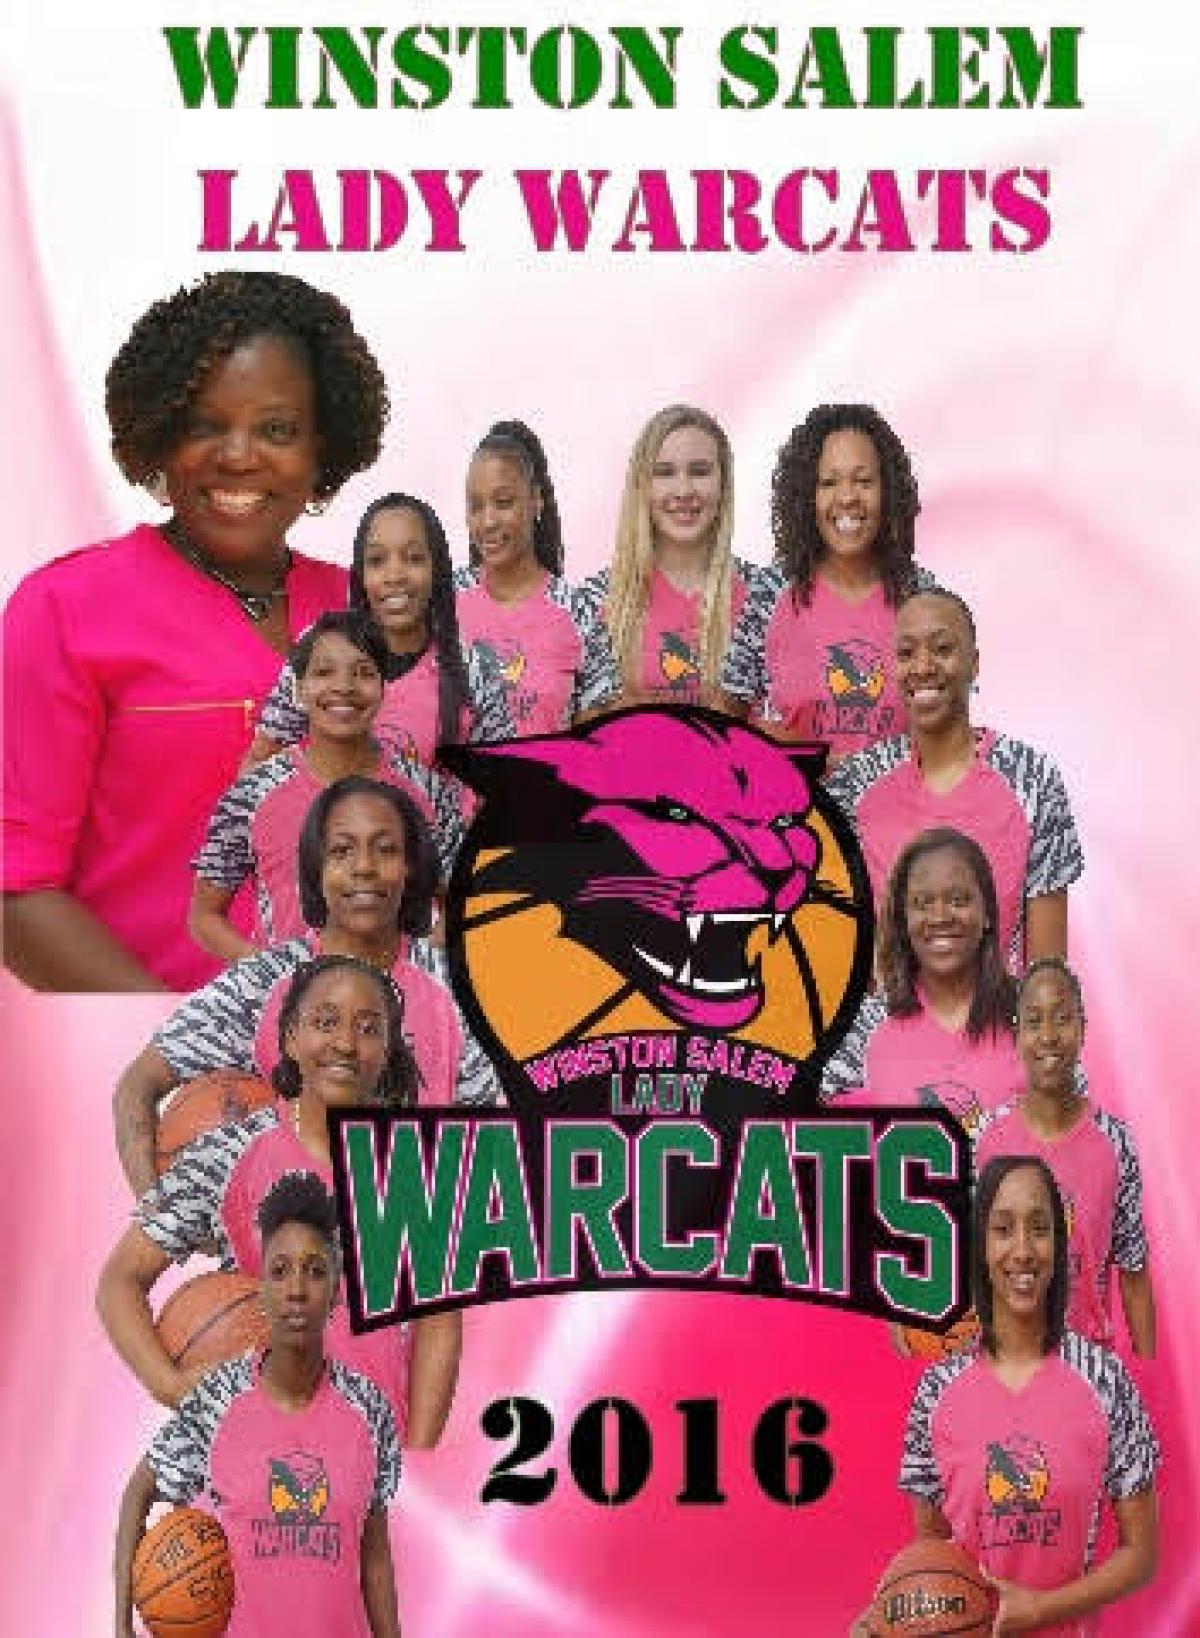 Winston Salem Lady Warcats' Media Day